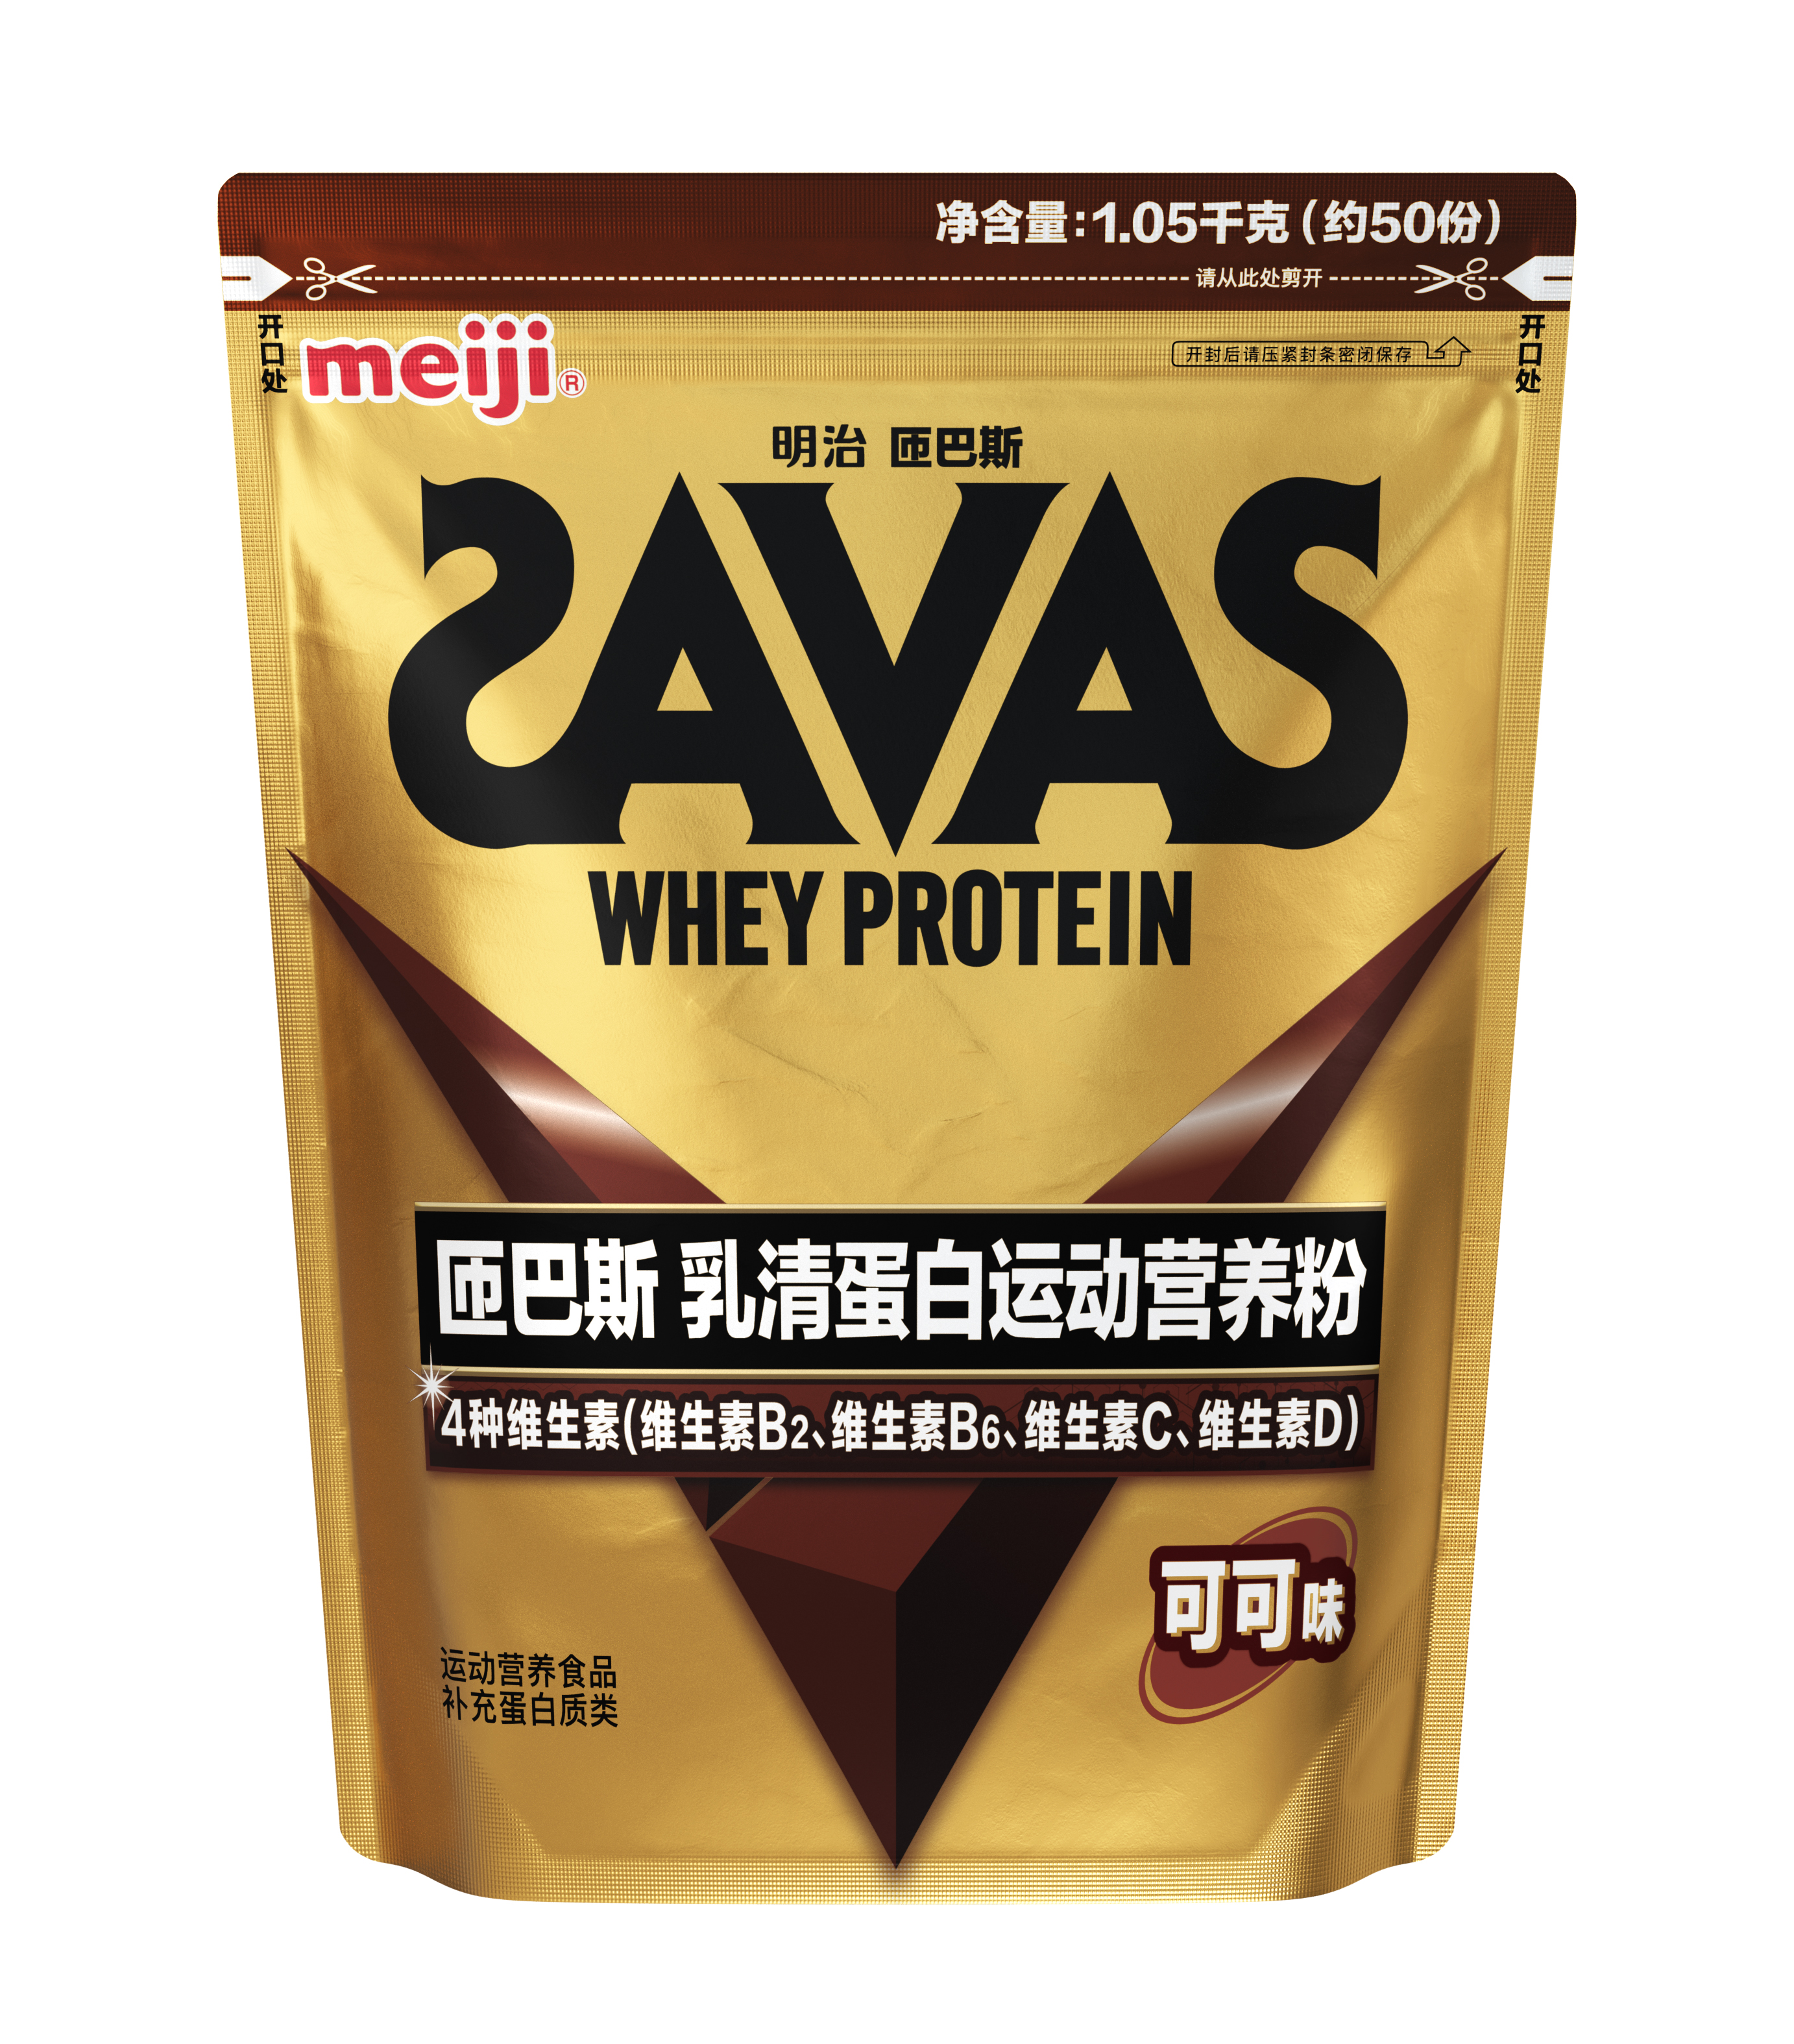 在中国销售的SAVAS产品图片